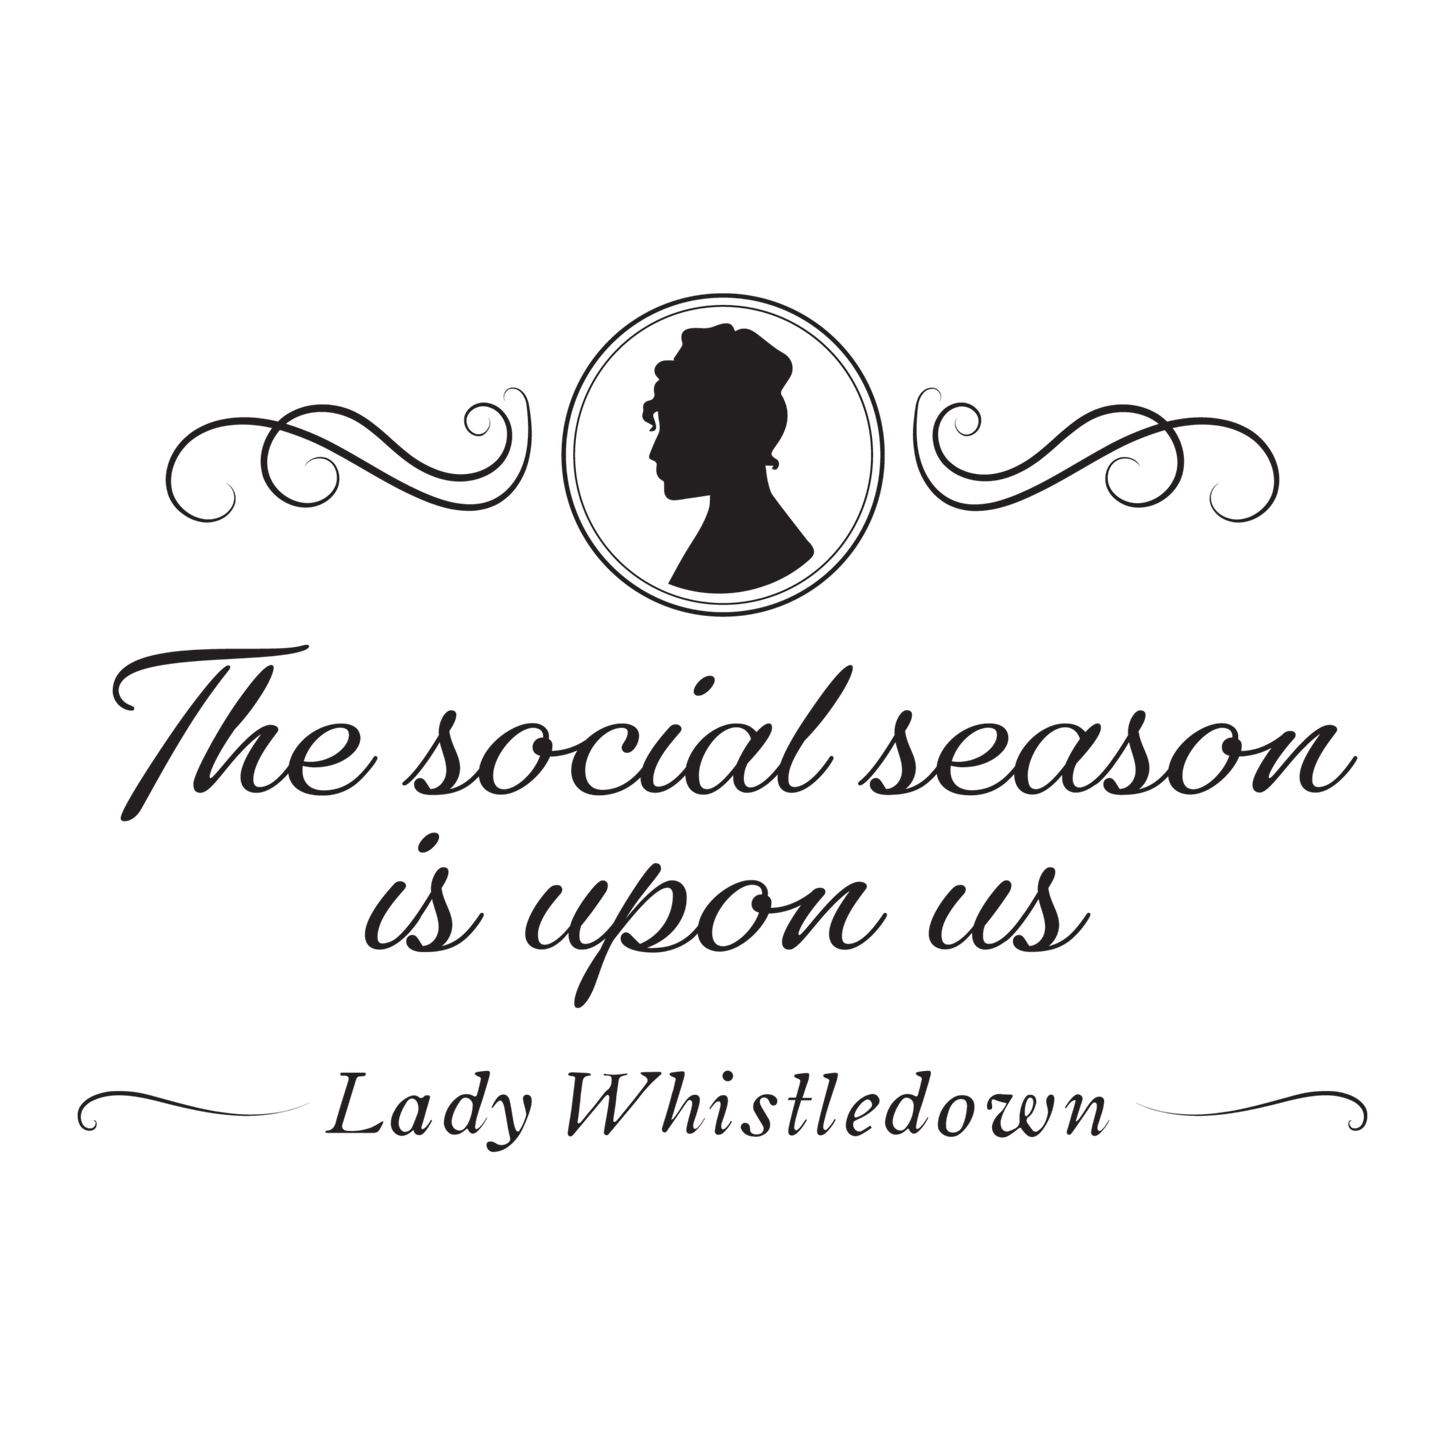 Bridgerton - Social Season - Wow Wraps